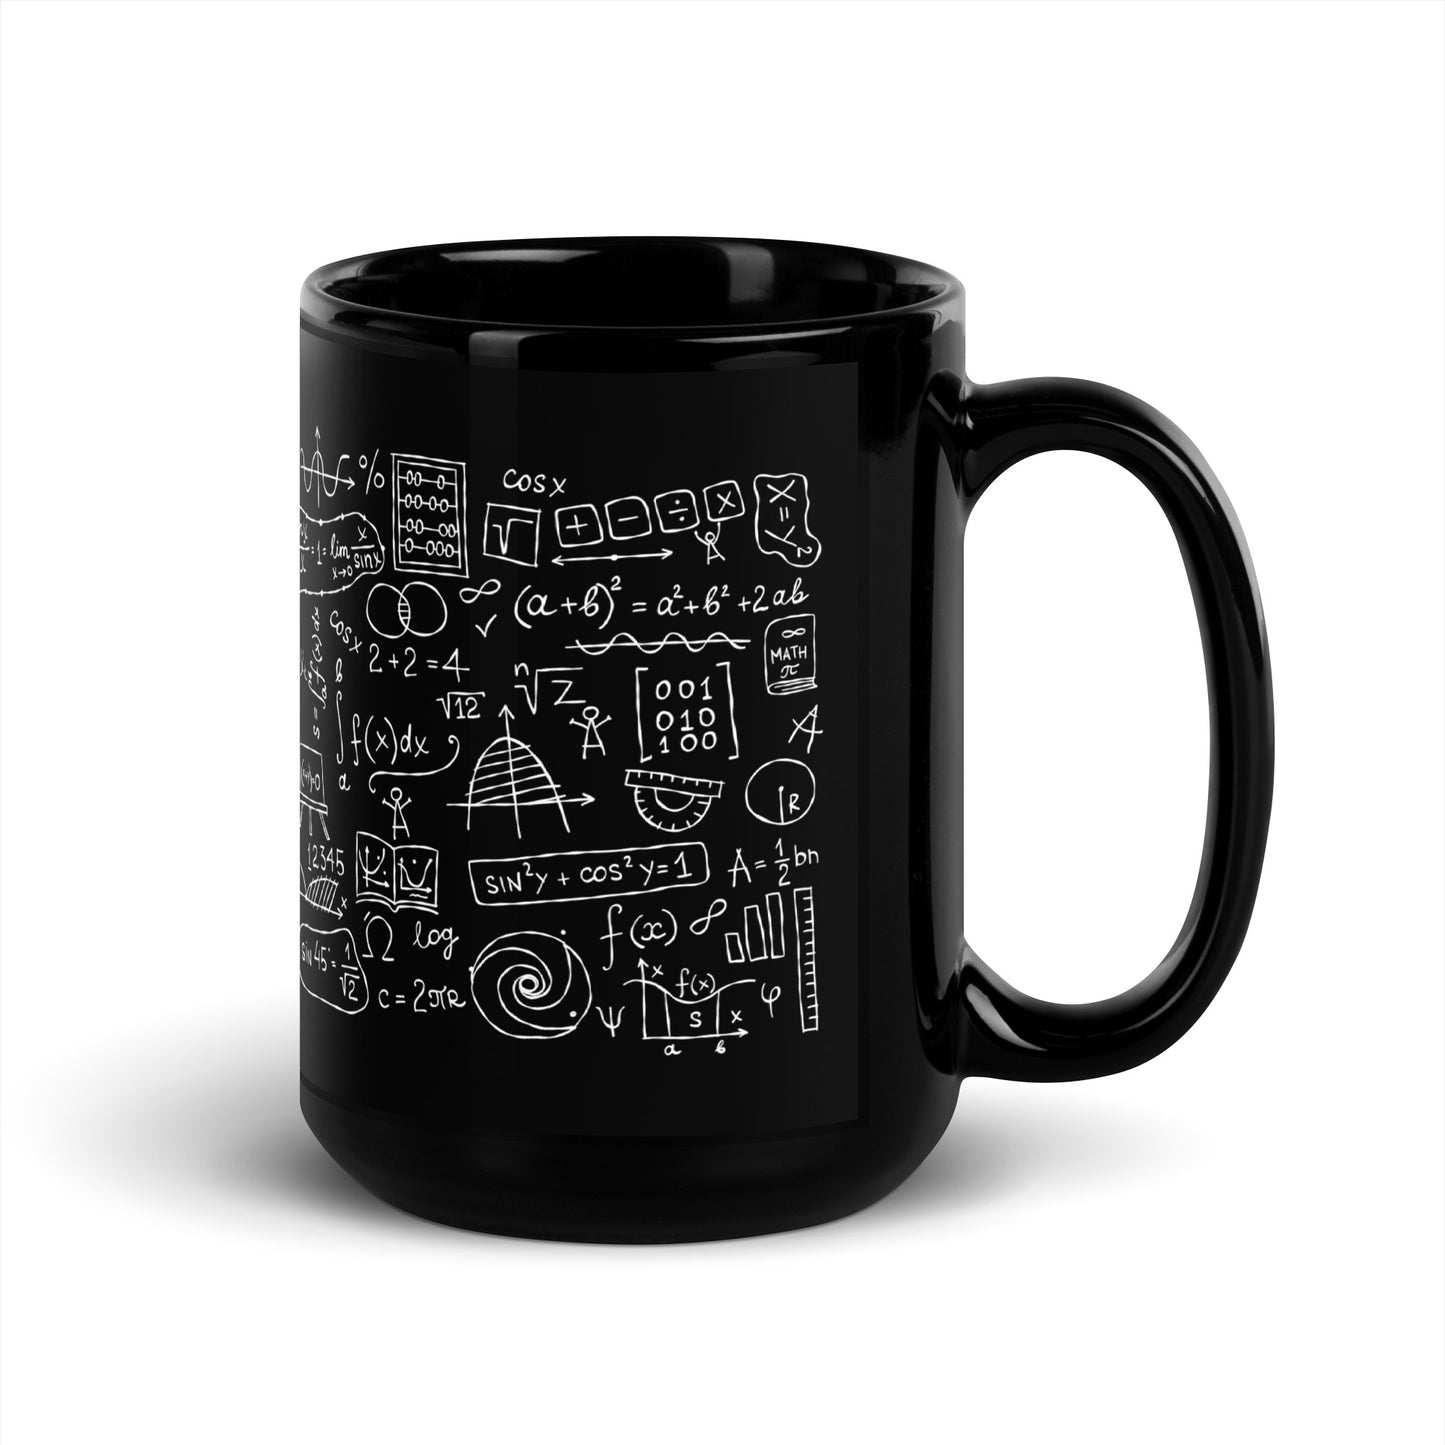 Mathematical Formulas and Symbols stylish black Gift Mug for Teachers, Students, and STEM Enthusiasts kudrylab